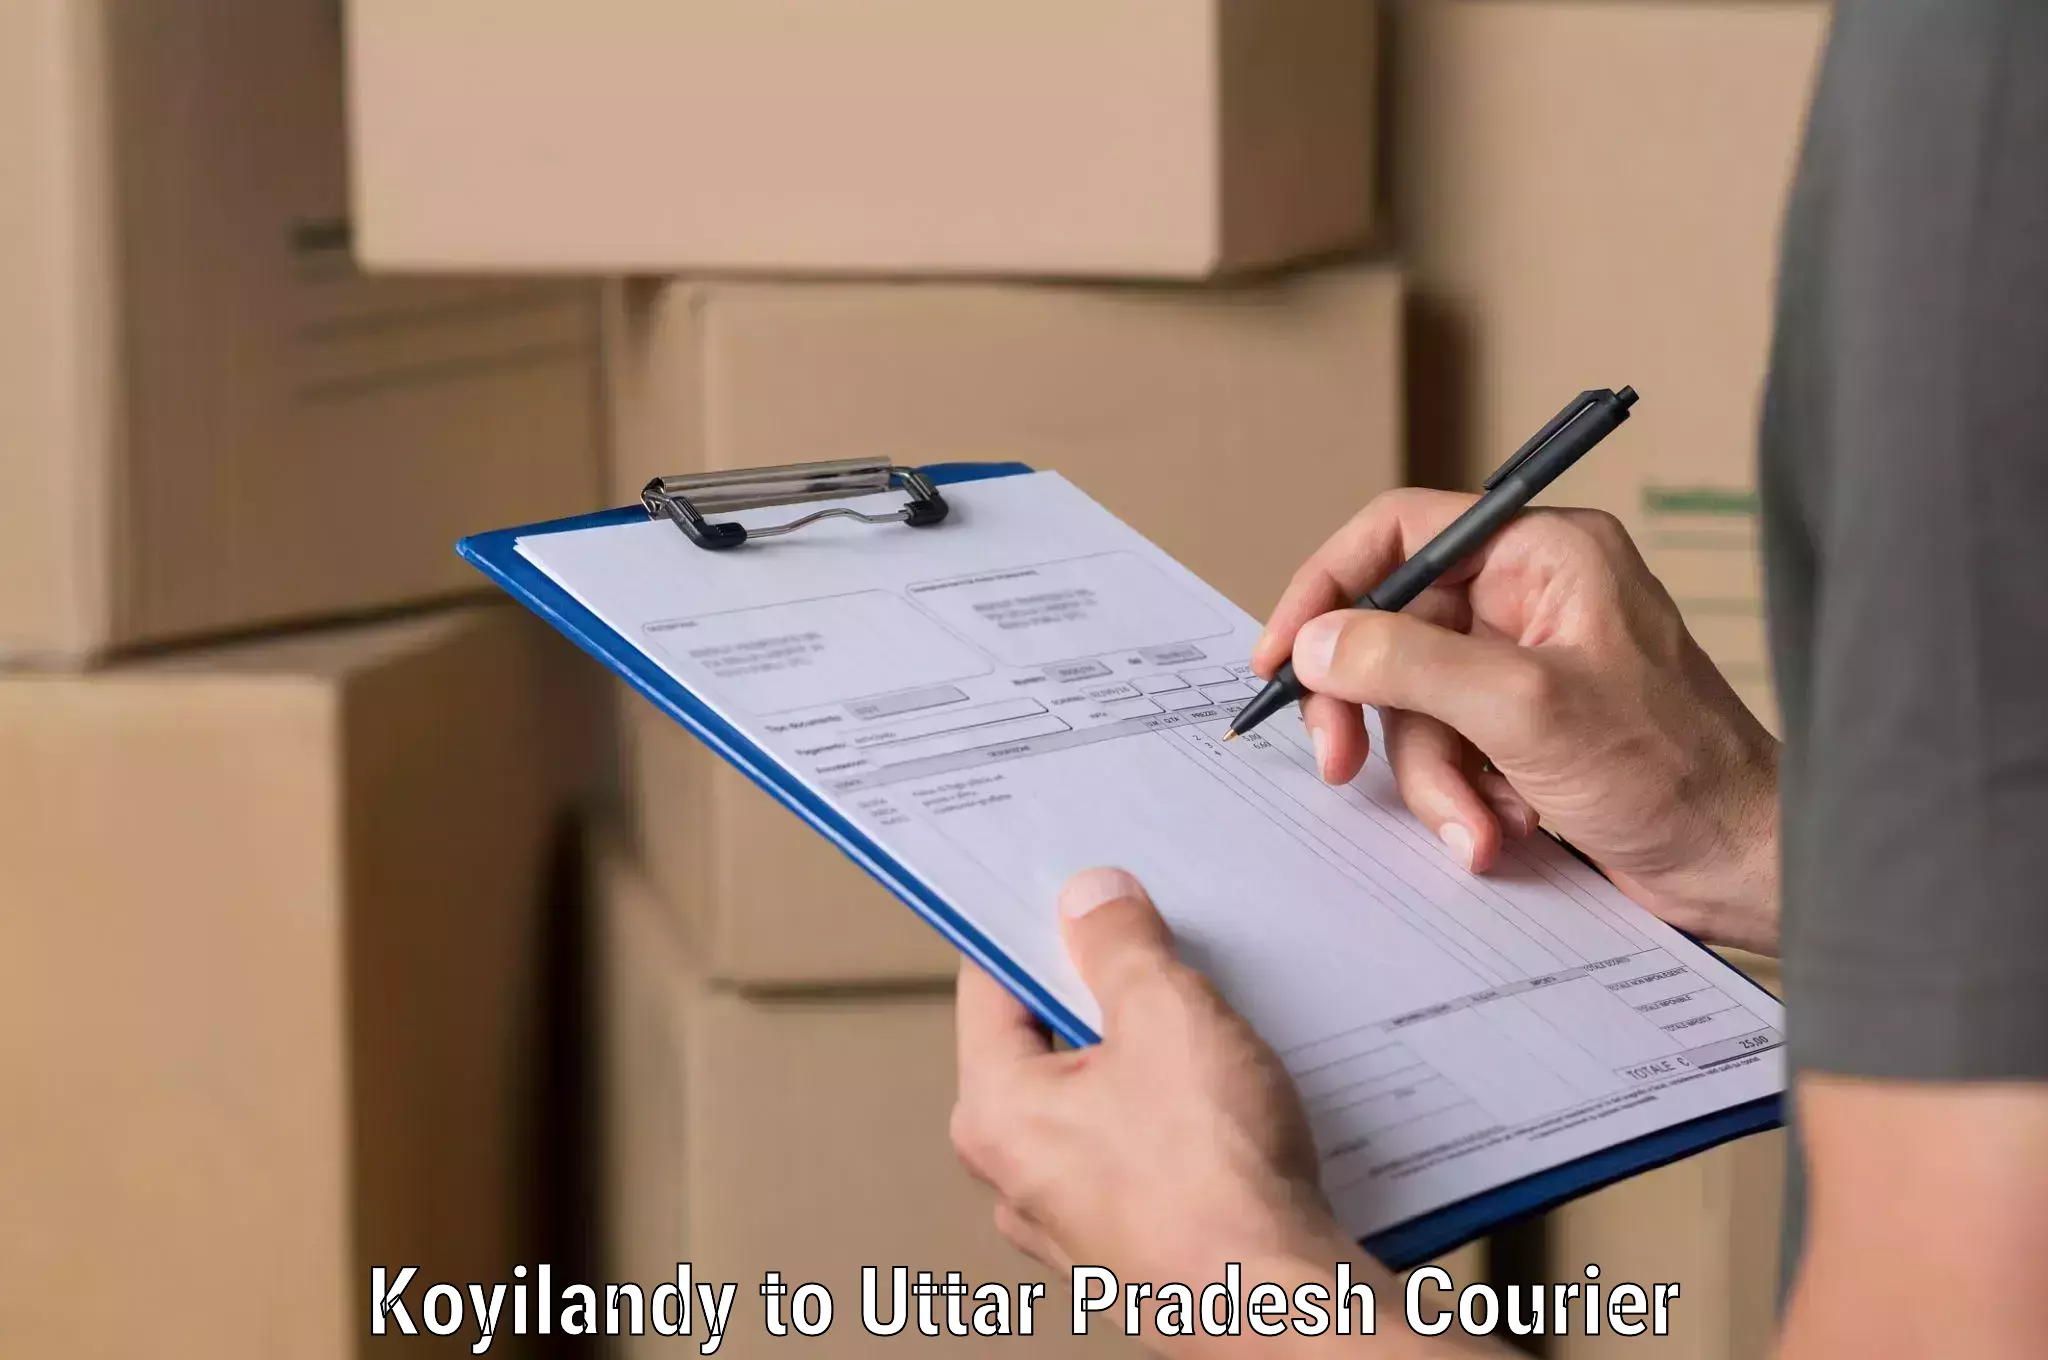 Logistics service provider Koyilandy to Lalganj Ajhara